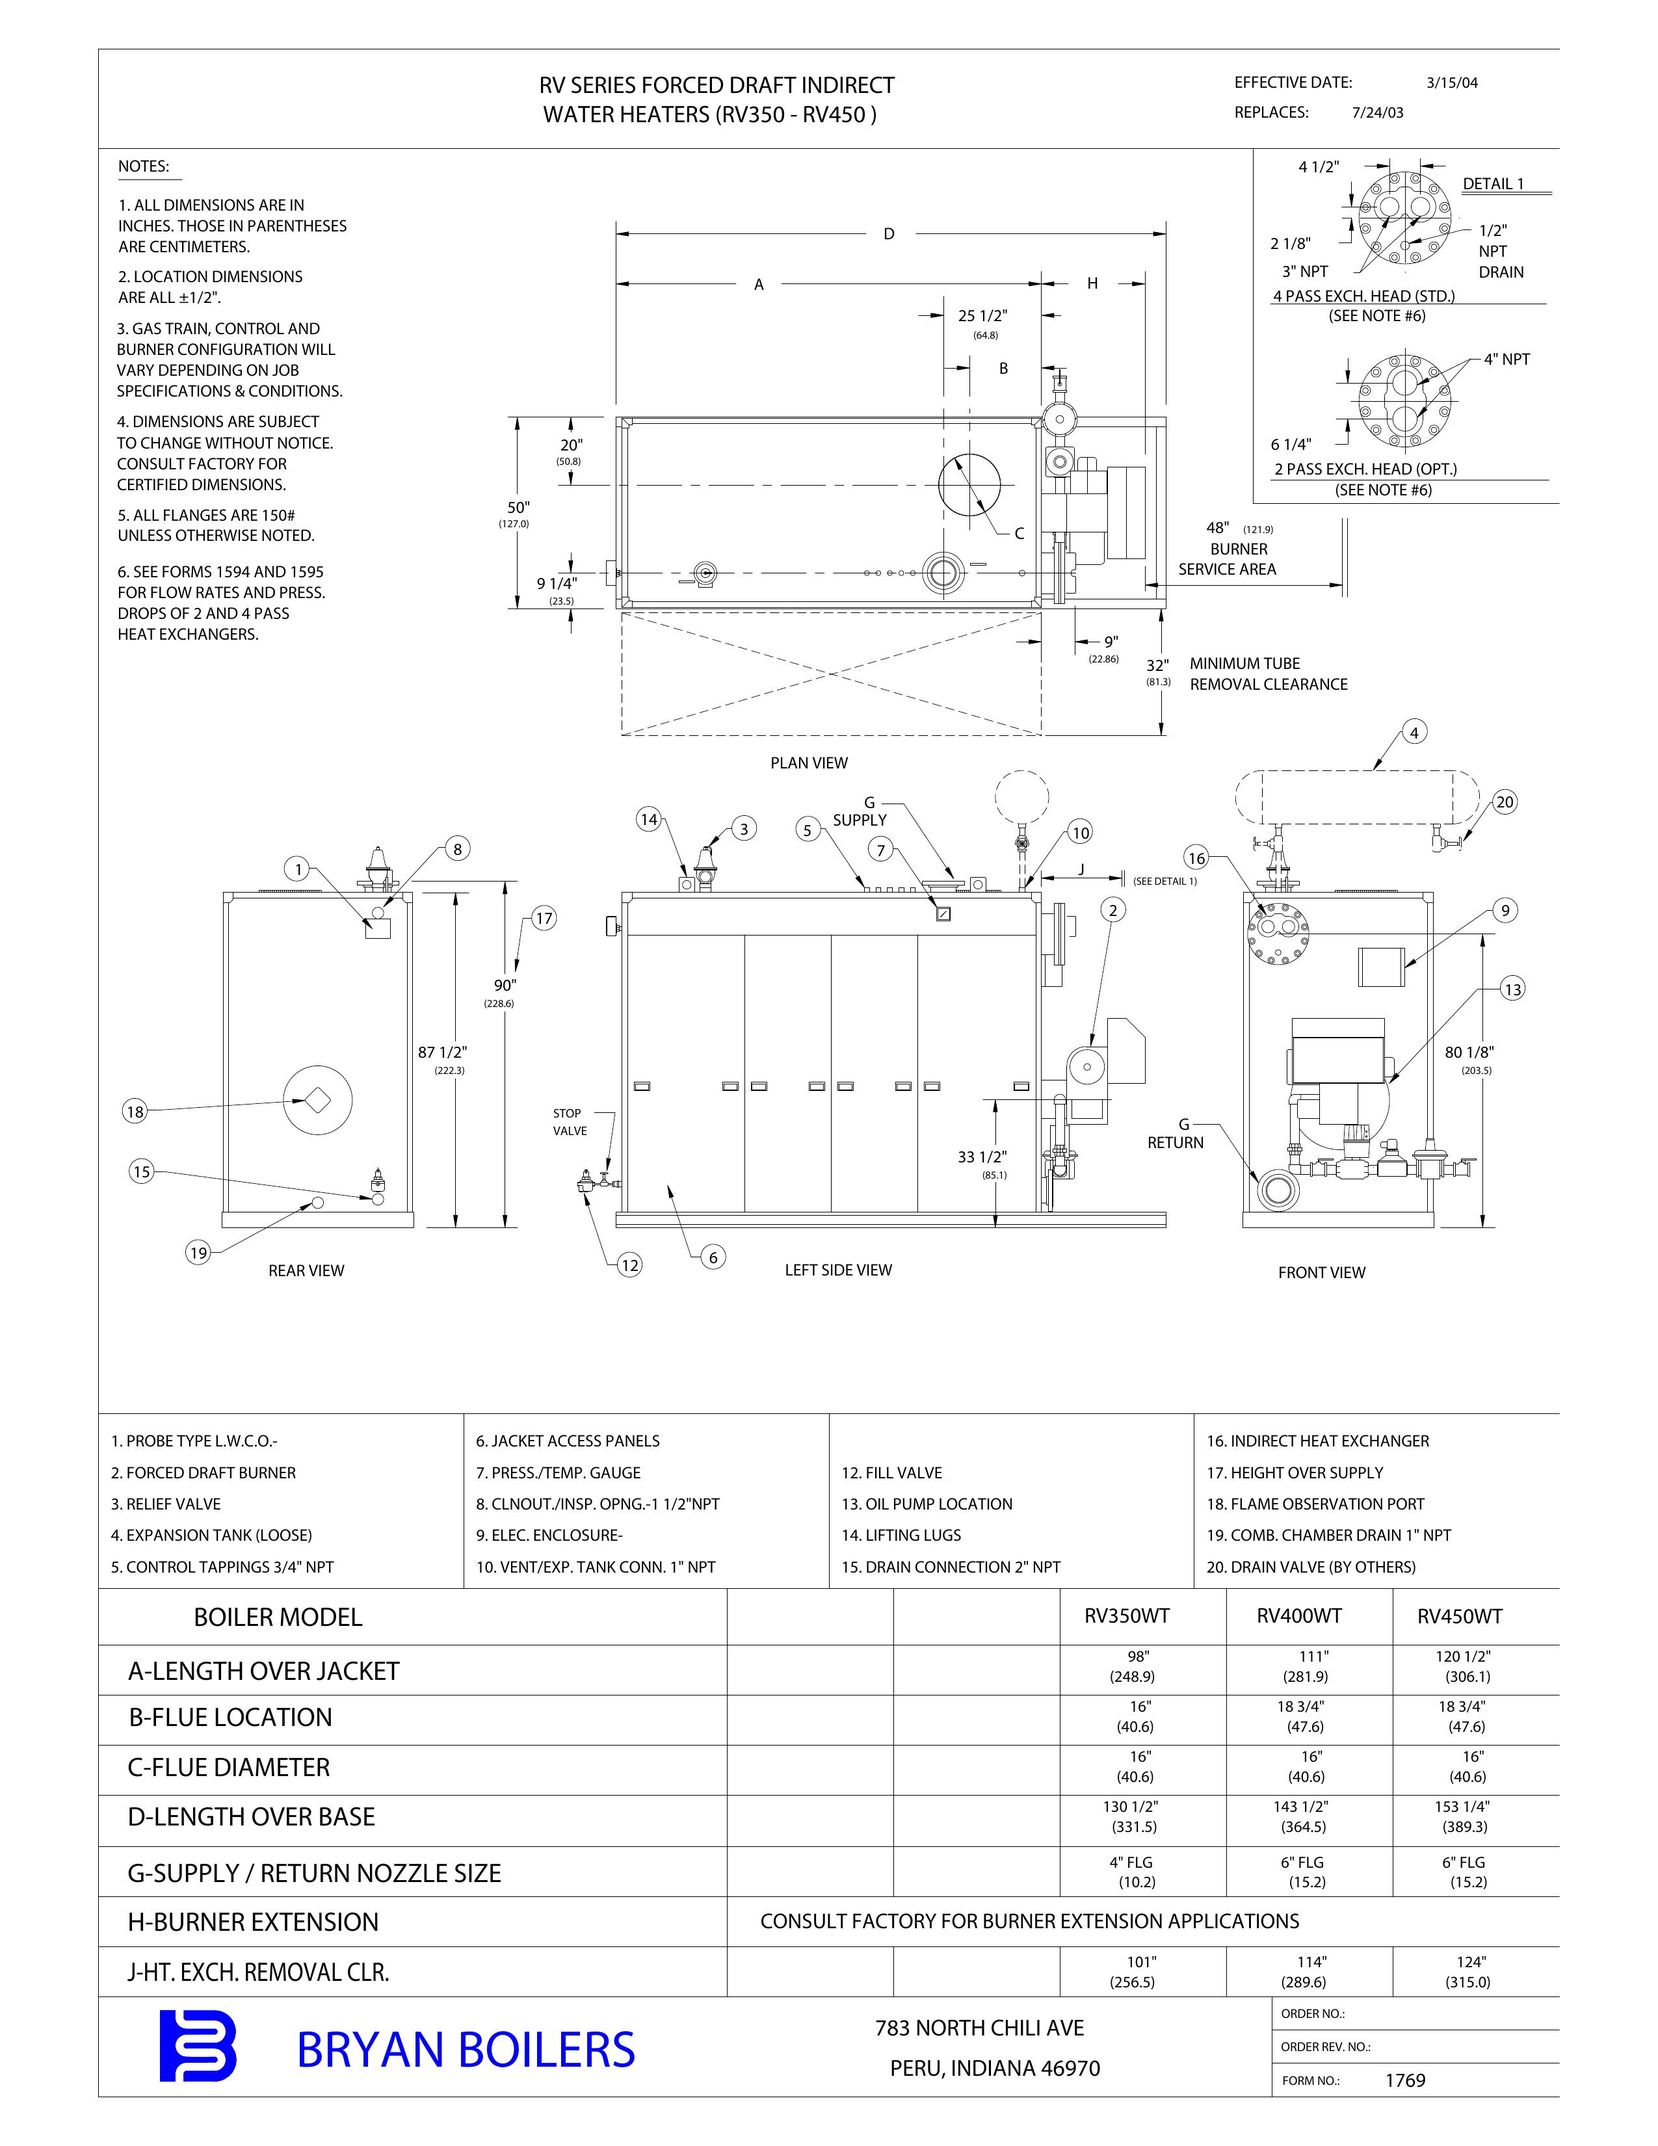 Bryan Boilers RV400 Water Heater User Manual